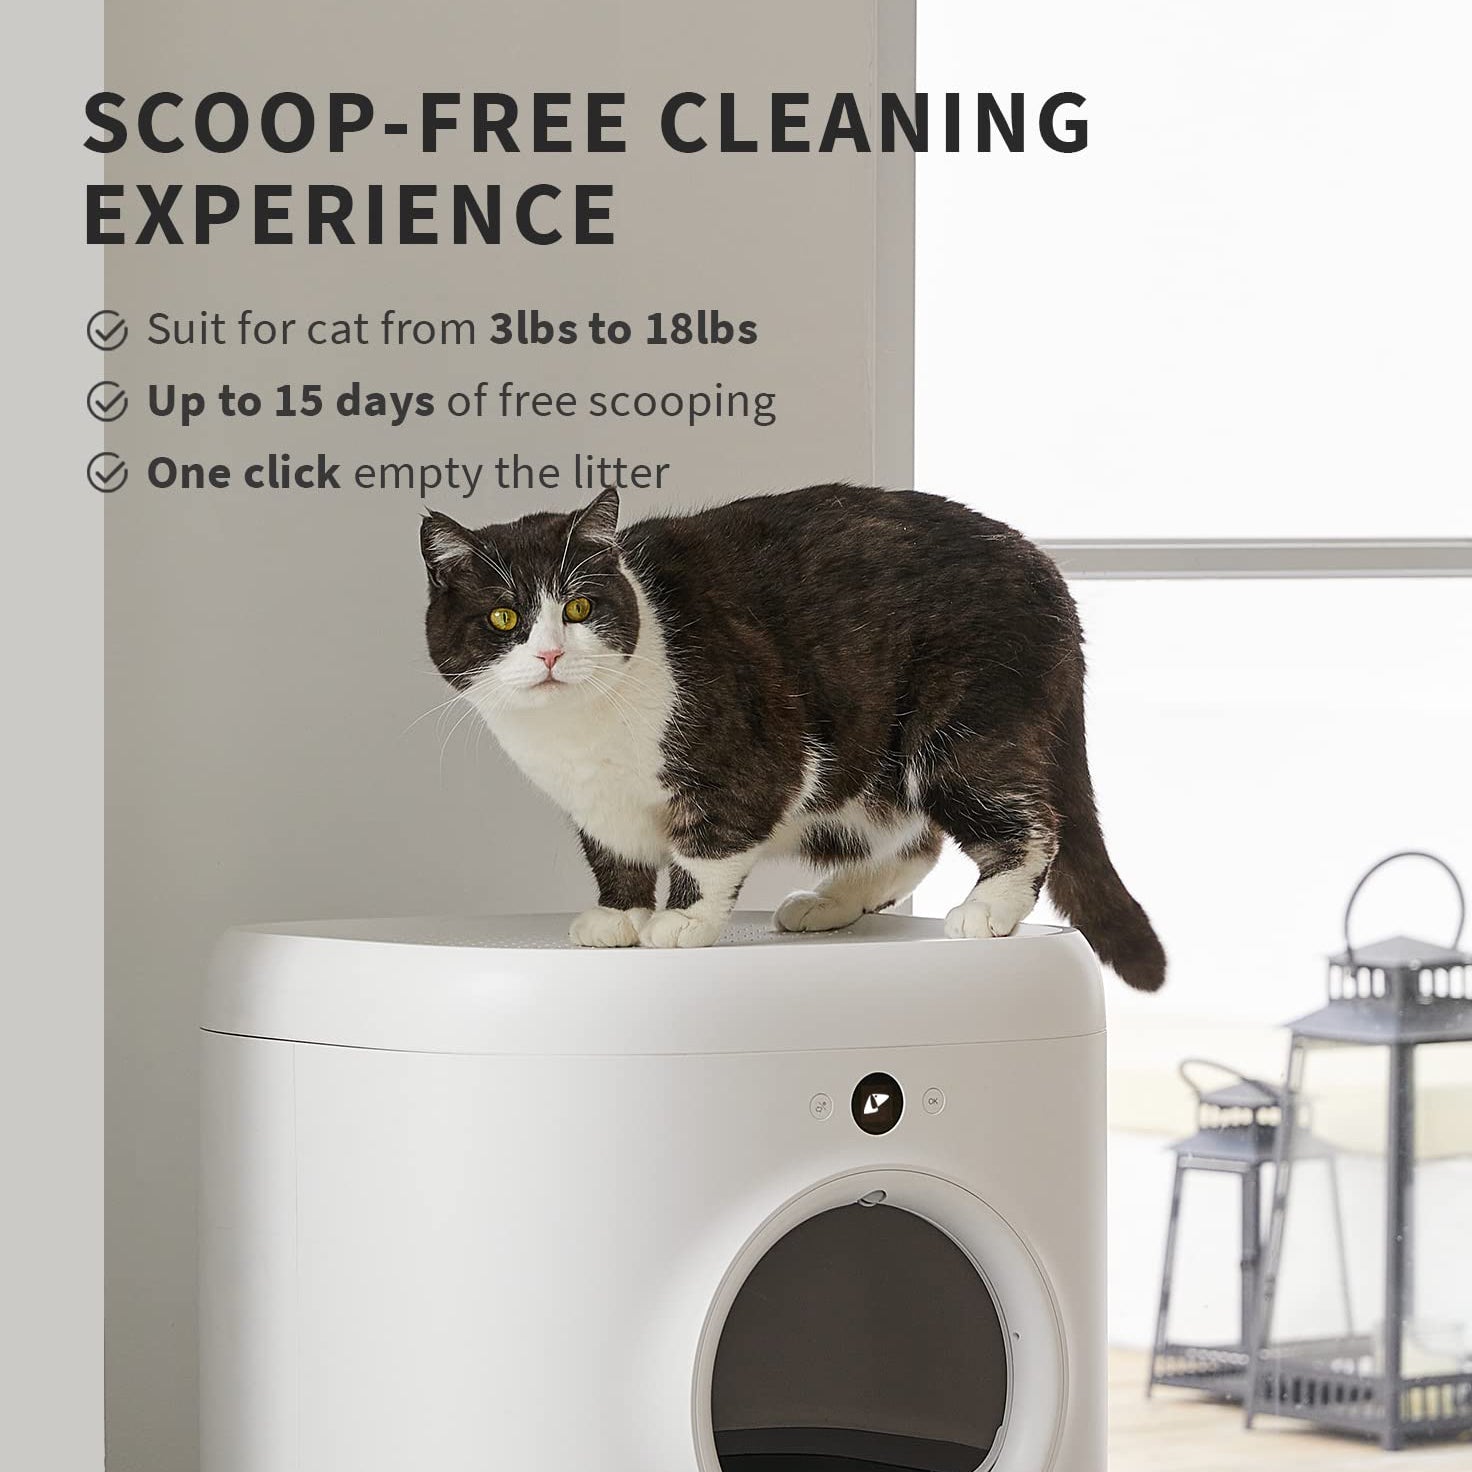 PETKIT | Self-Cleaning Cat Litter Box - Pura X (T3-Preorder)